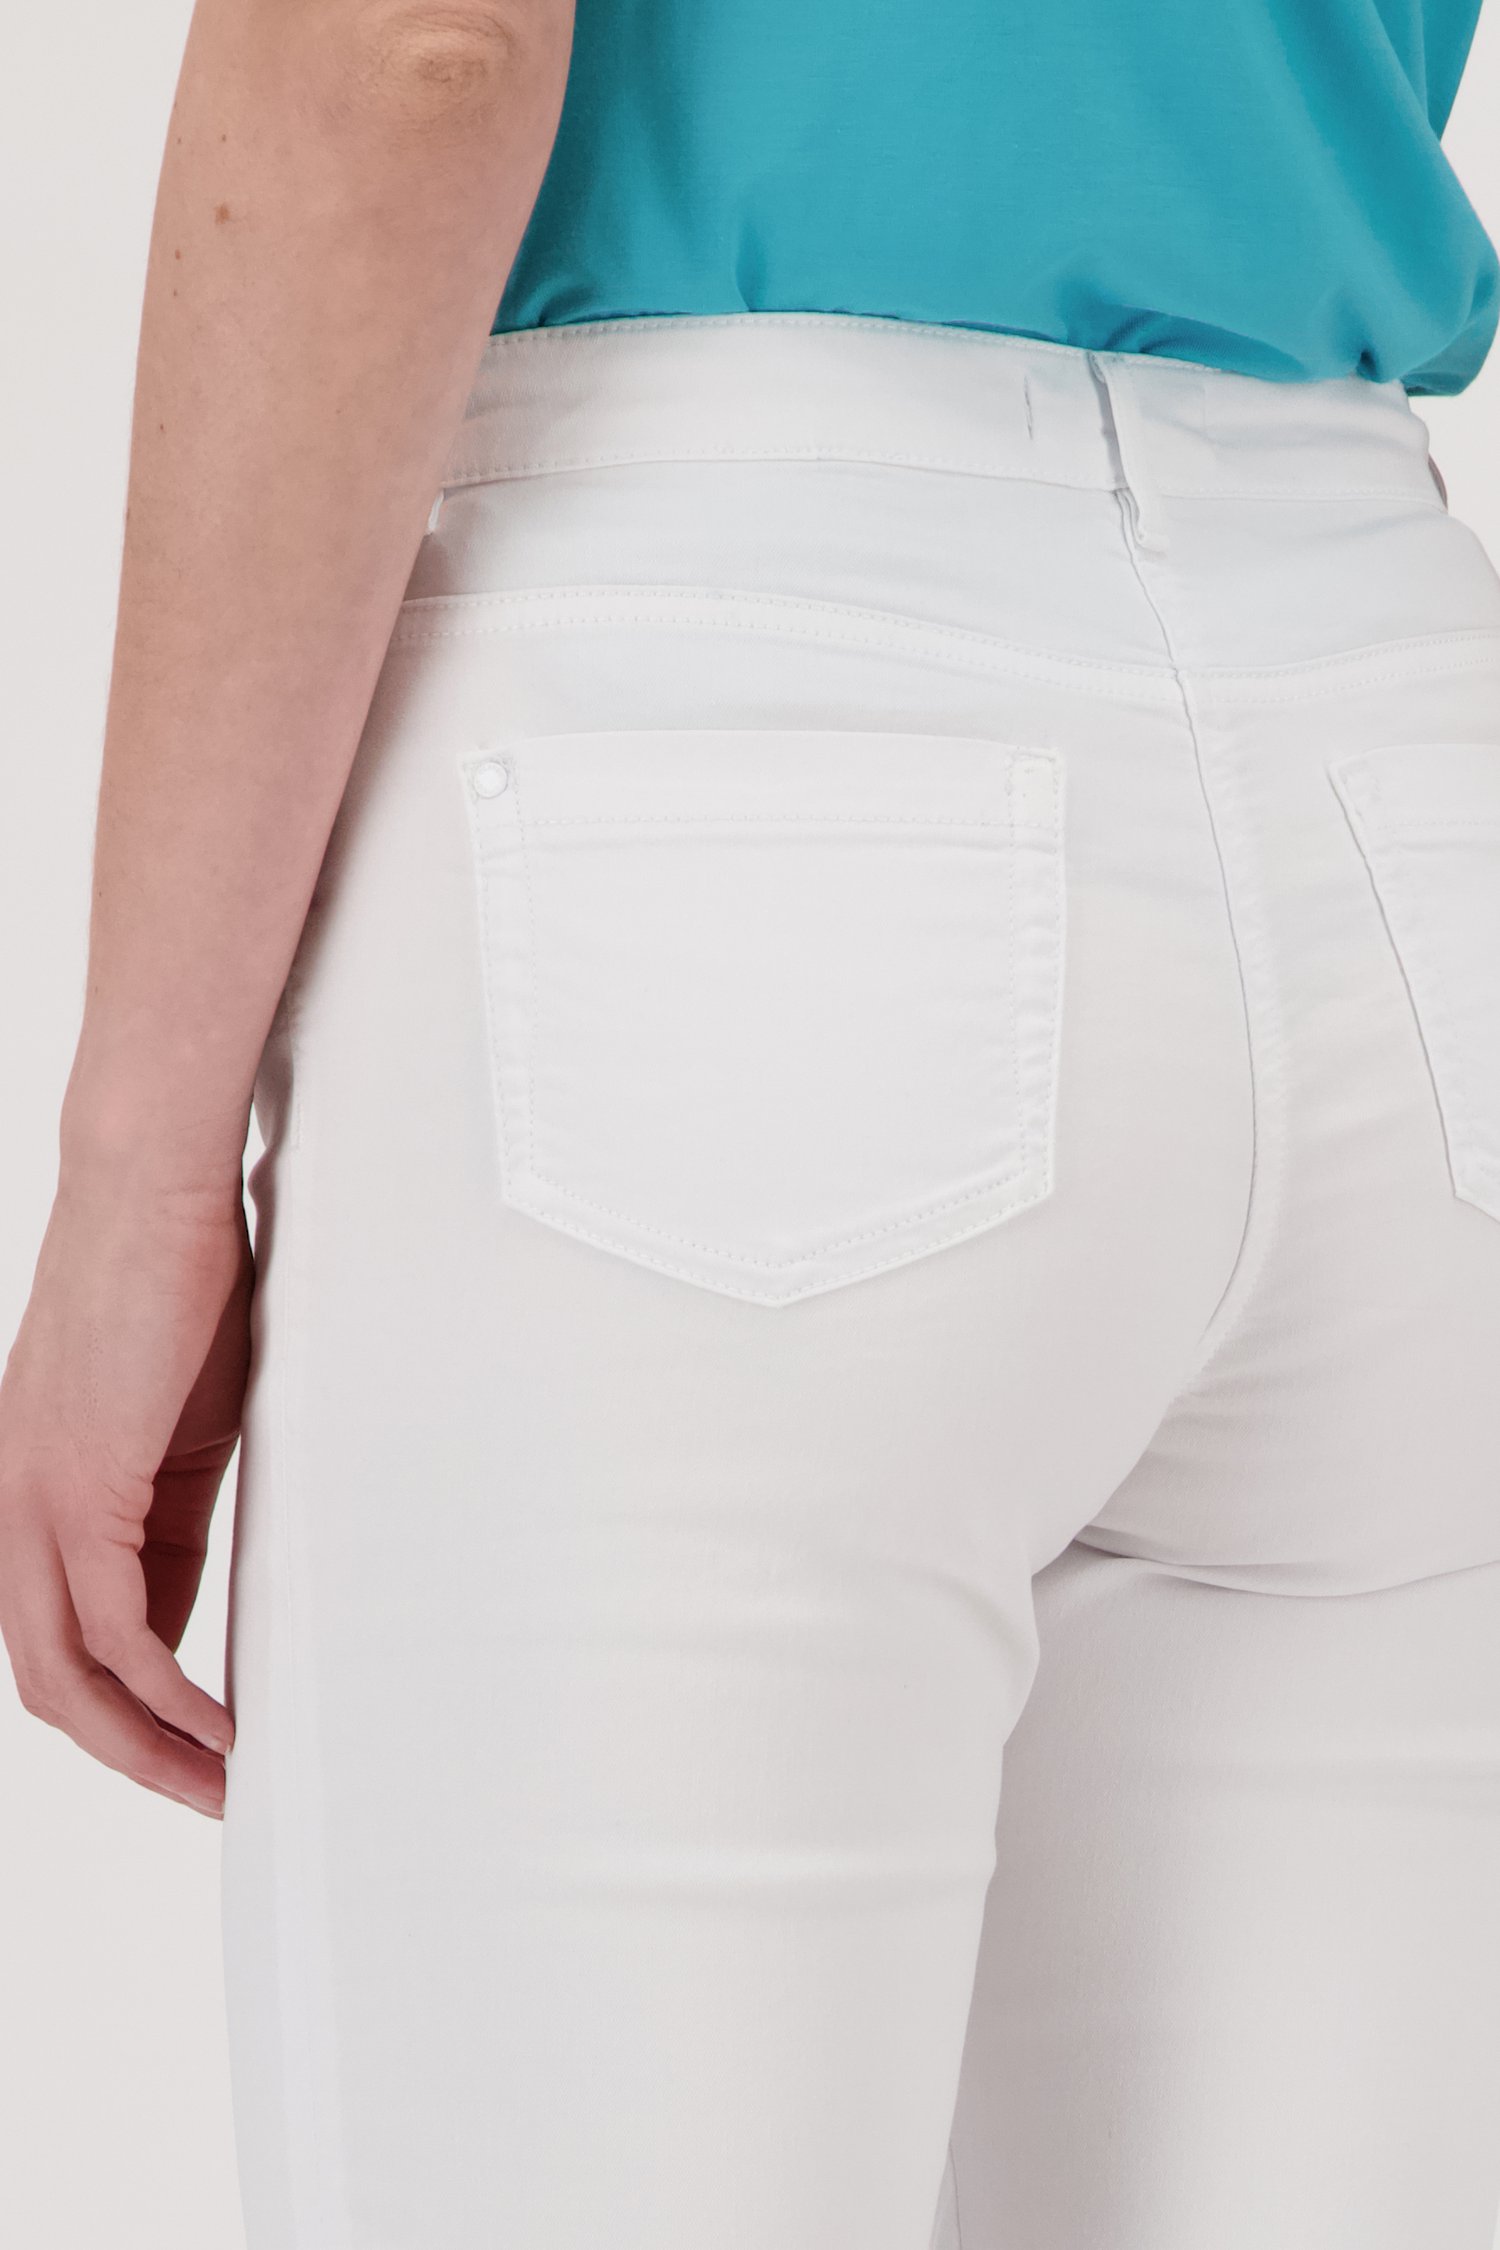 Witte broek met 3/4 lengte van Claude Arielle voor Dames